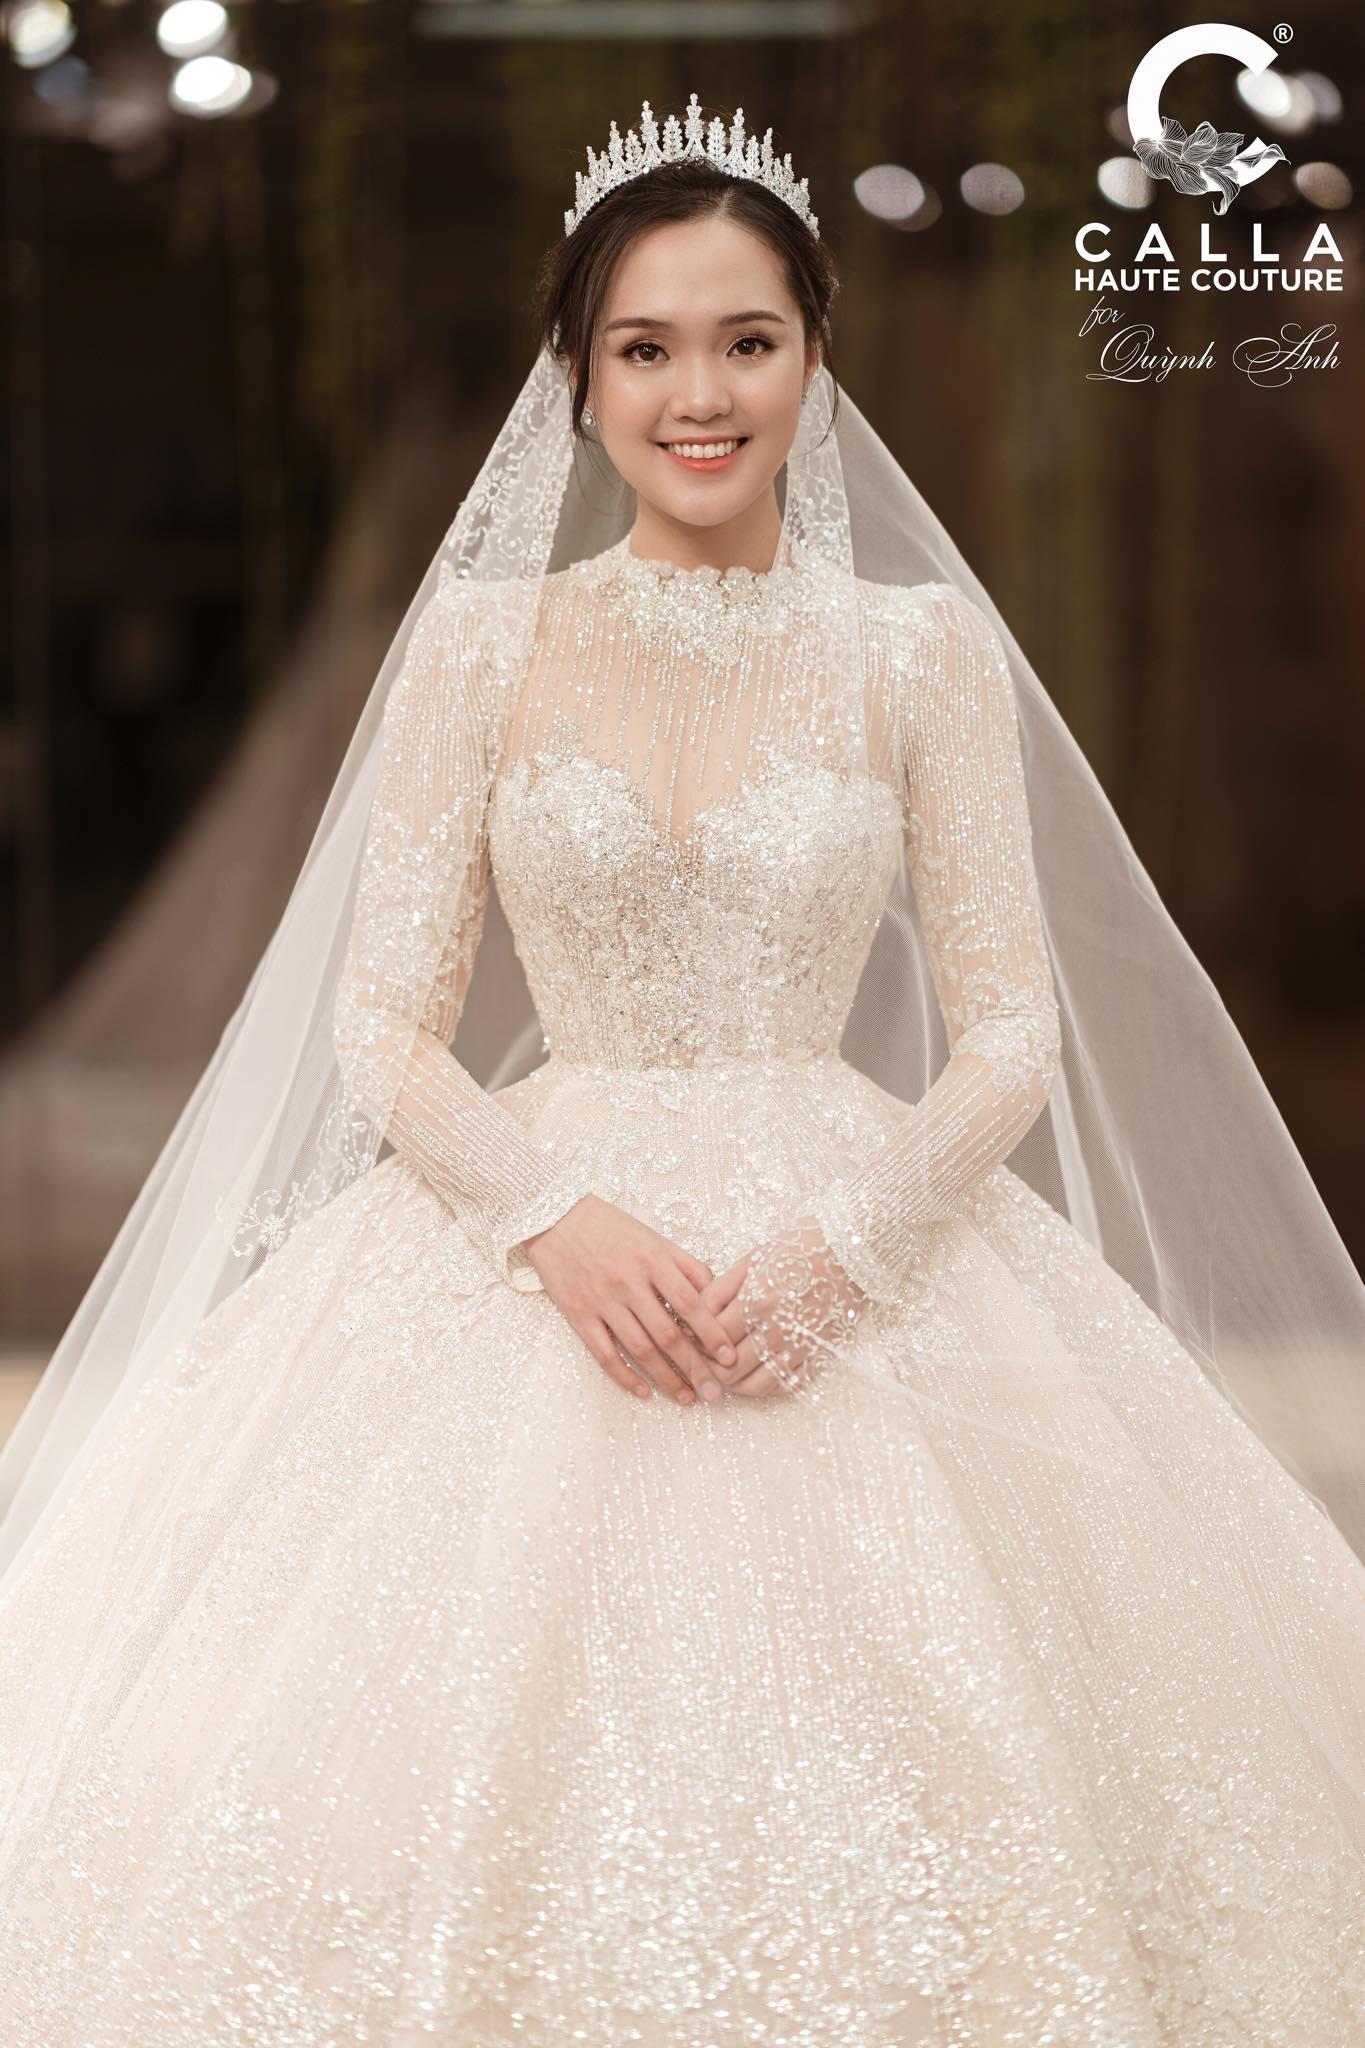 Bóc giá loạt váy cưới đắt đỏ của công chúa béo Quỳnh Anh  vợ cầu thủ  Duy Mạnh